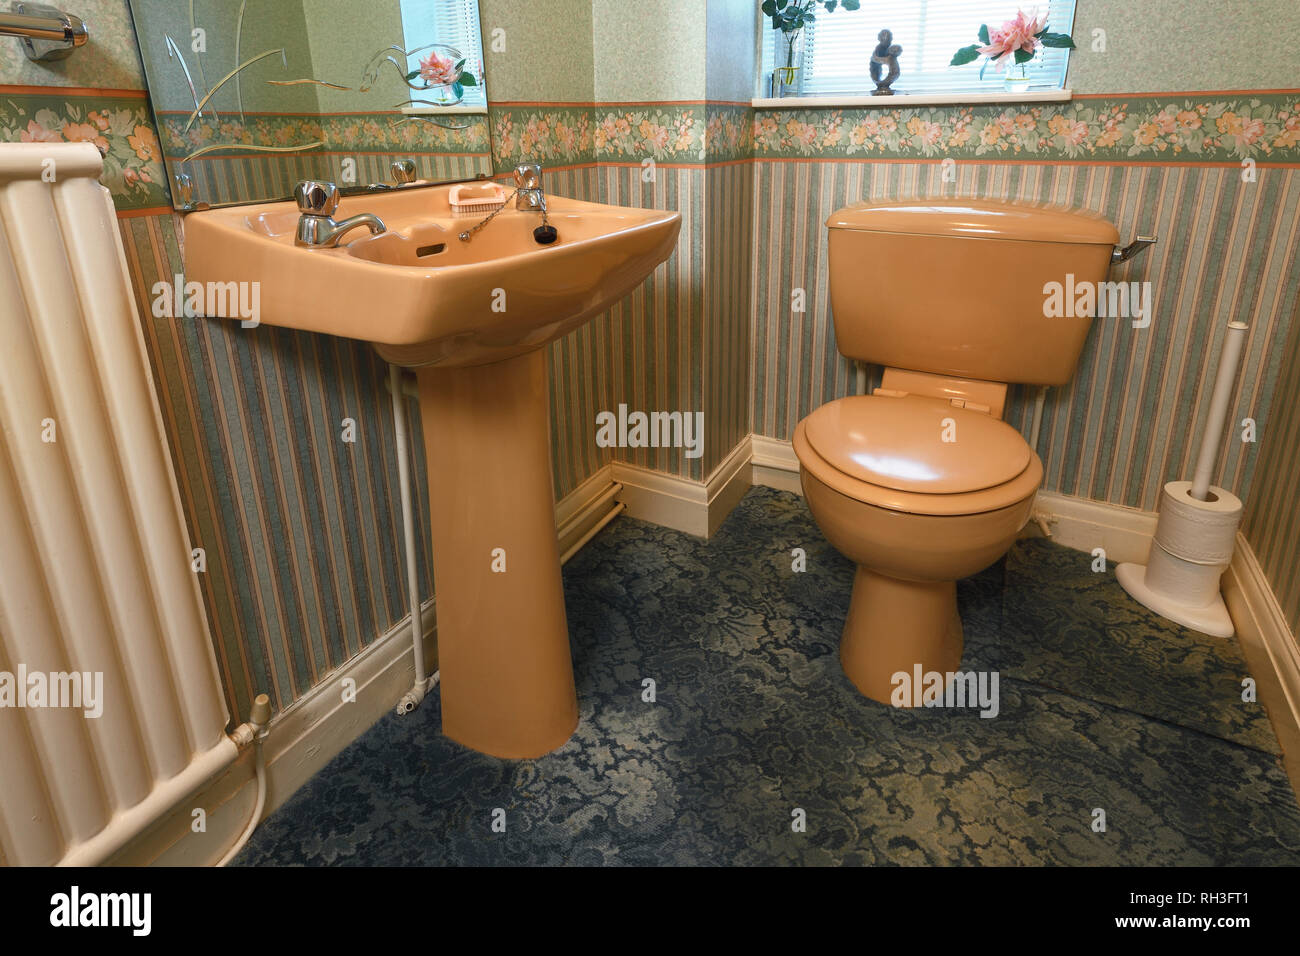 Une couleur marron à l'ancienne suite dans une des toilettes au rez-de-chaussée Banque D'Images